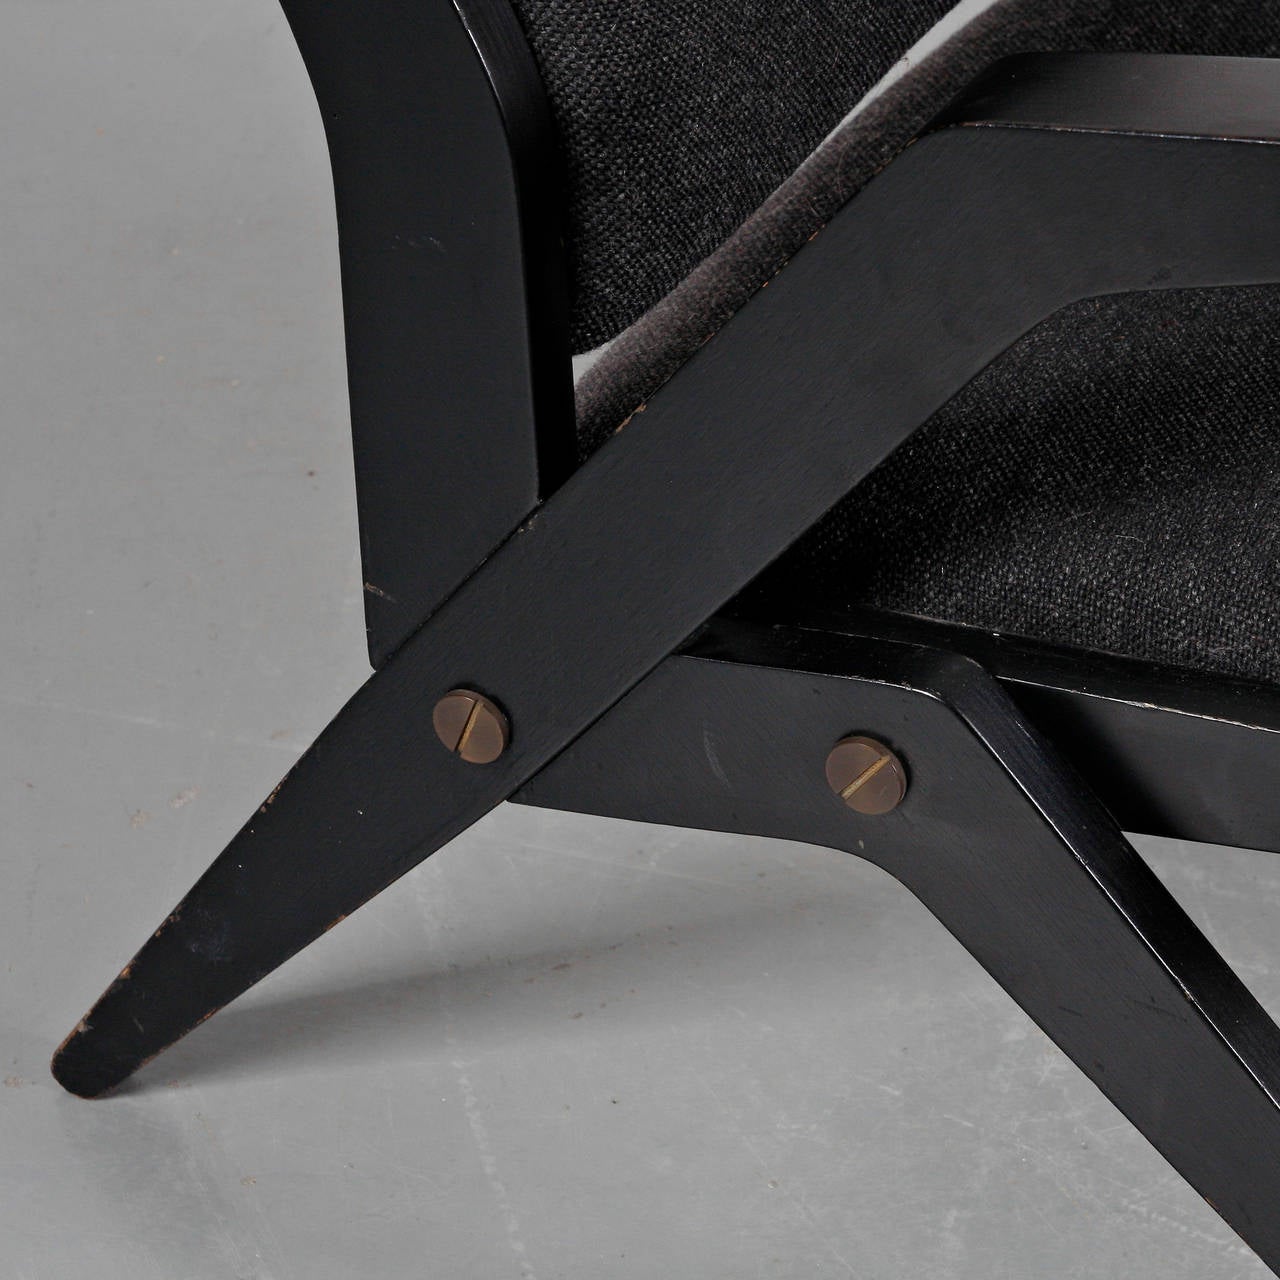 Très rare fauteuil conçu par le directeur de la société de meubles Akerblom et fabriqué par Akerblom en Suède, vers 1950.

Il s'agit d'une pièce très ancienne dans un état incroyable, une trouvaille très rare ! La structure est en bois noir de haute